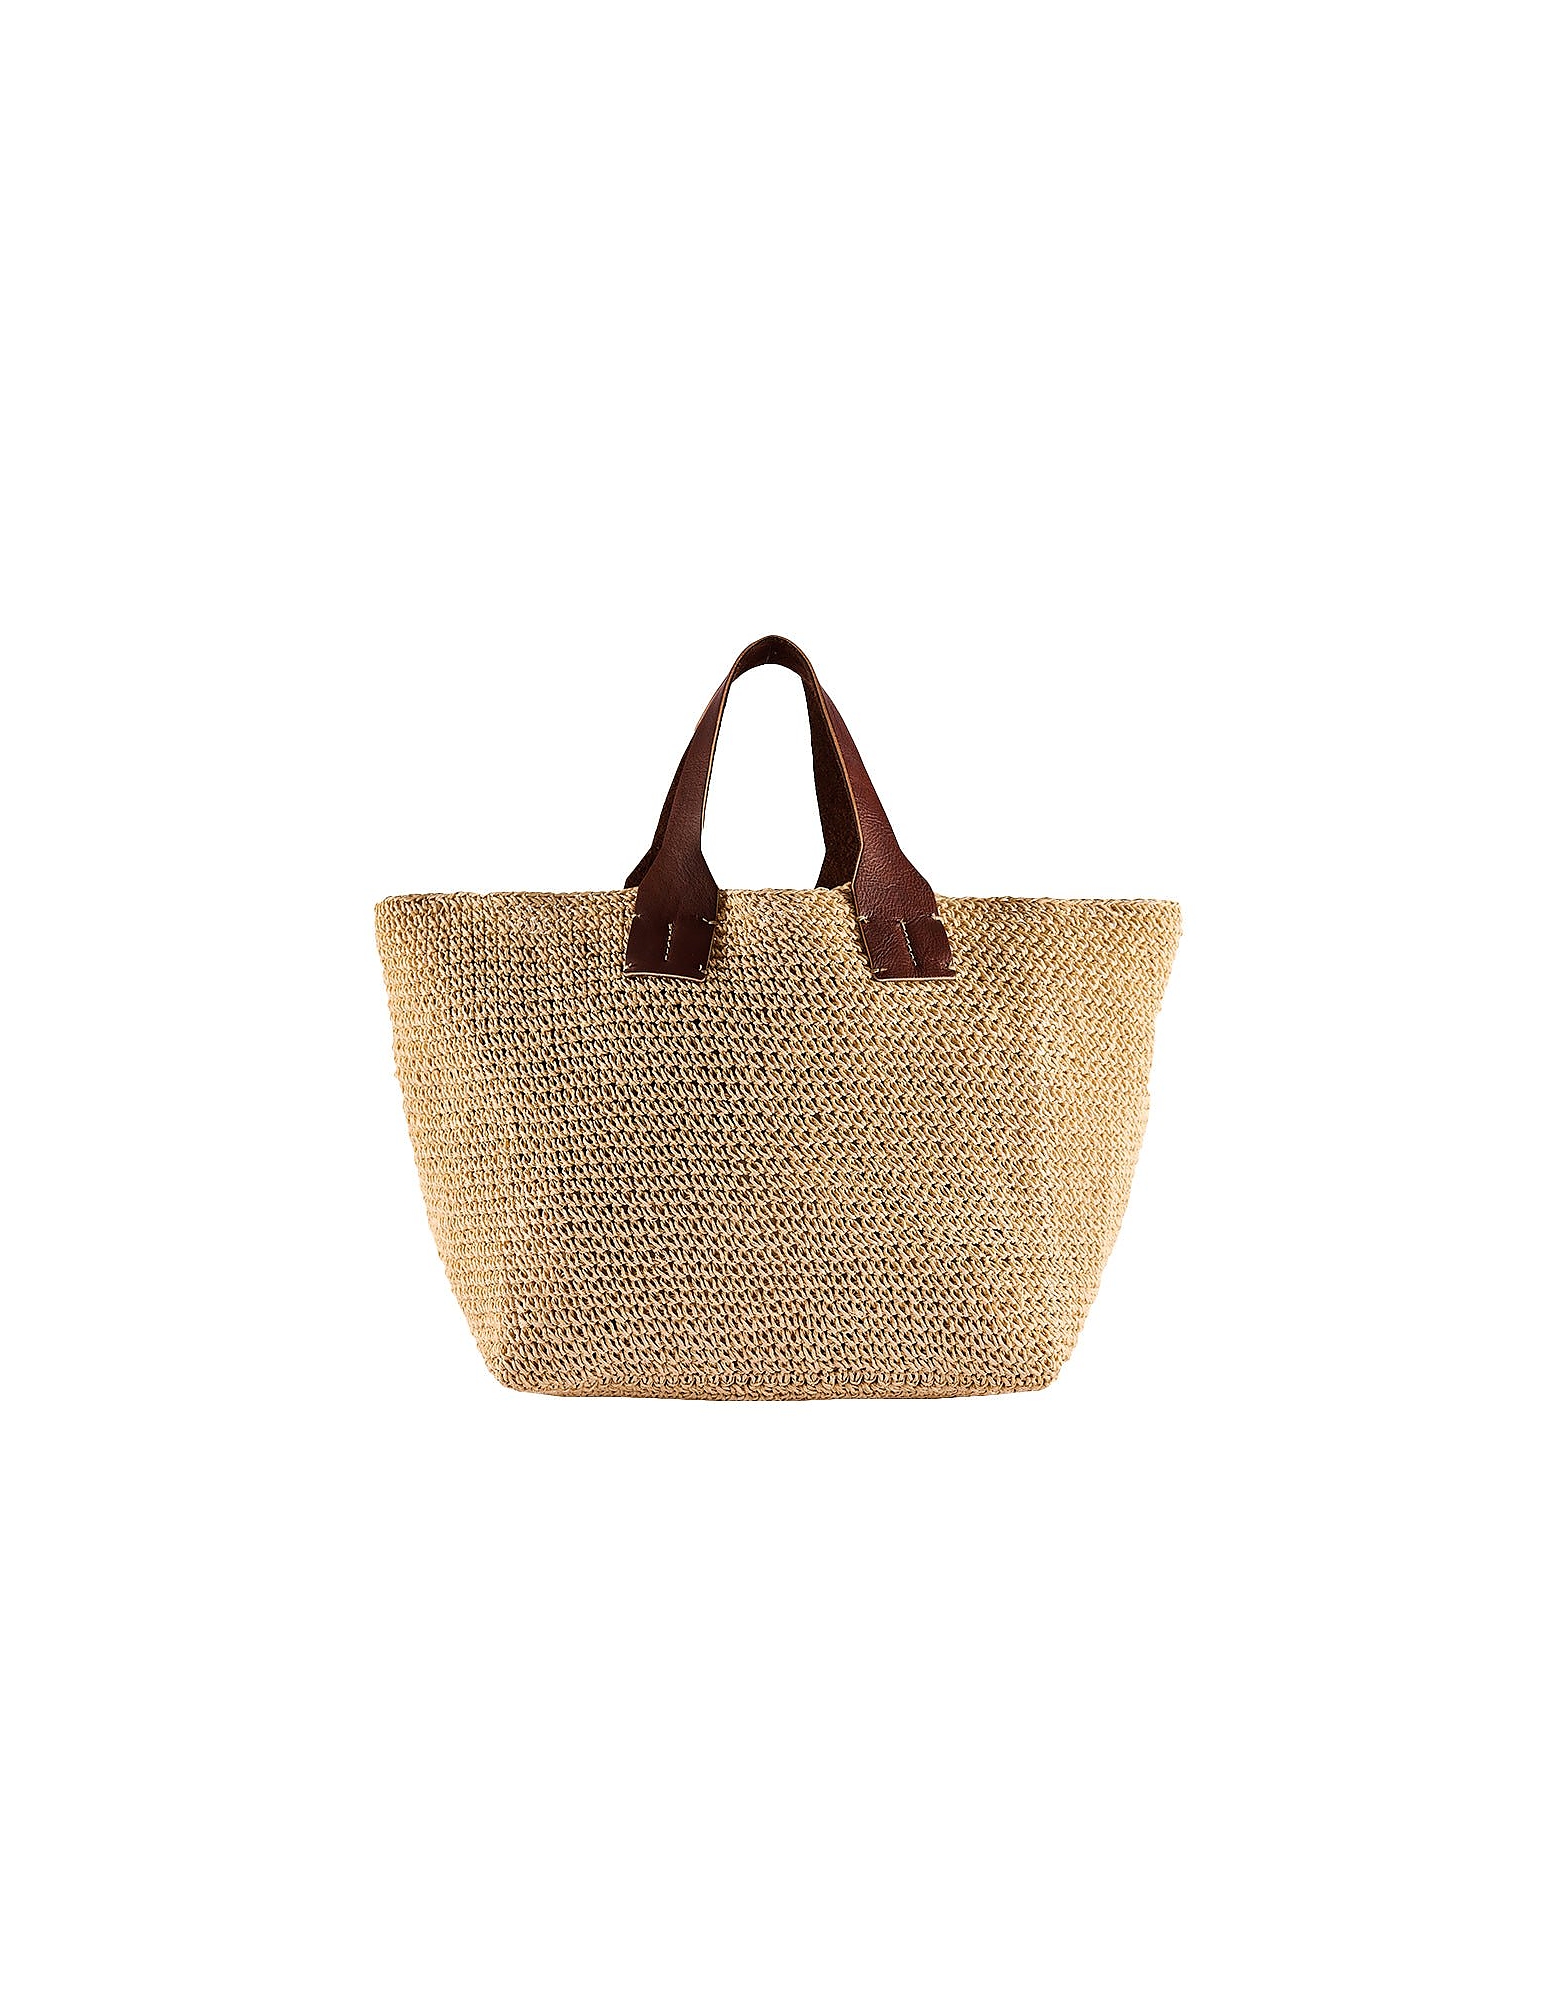 Viamailbag Designer Handbags Juan Capsule Pure - Top Handle Bag In Marron